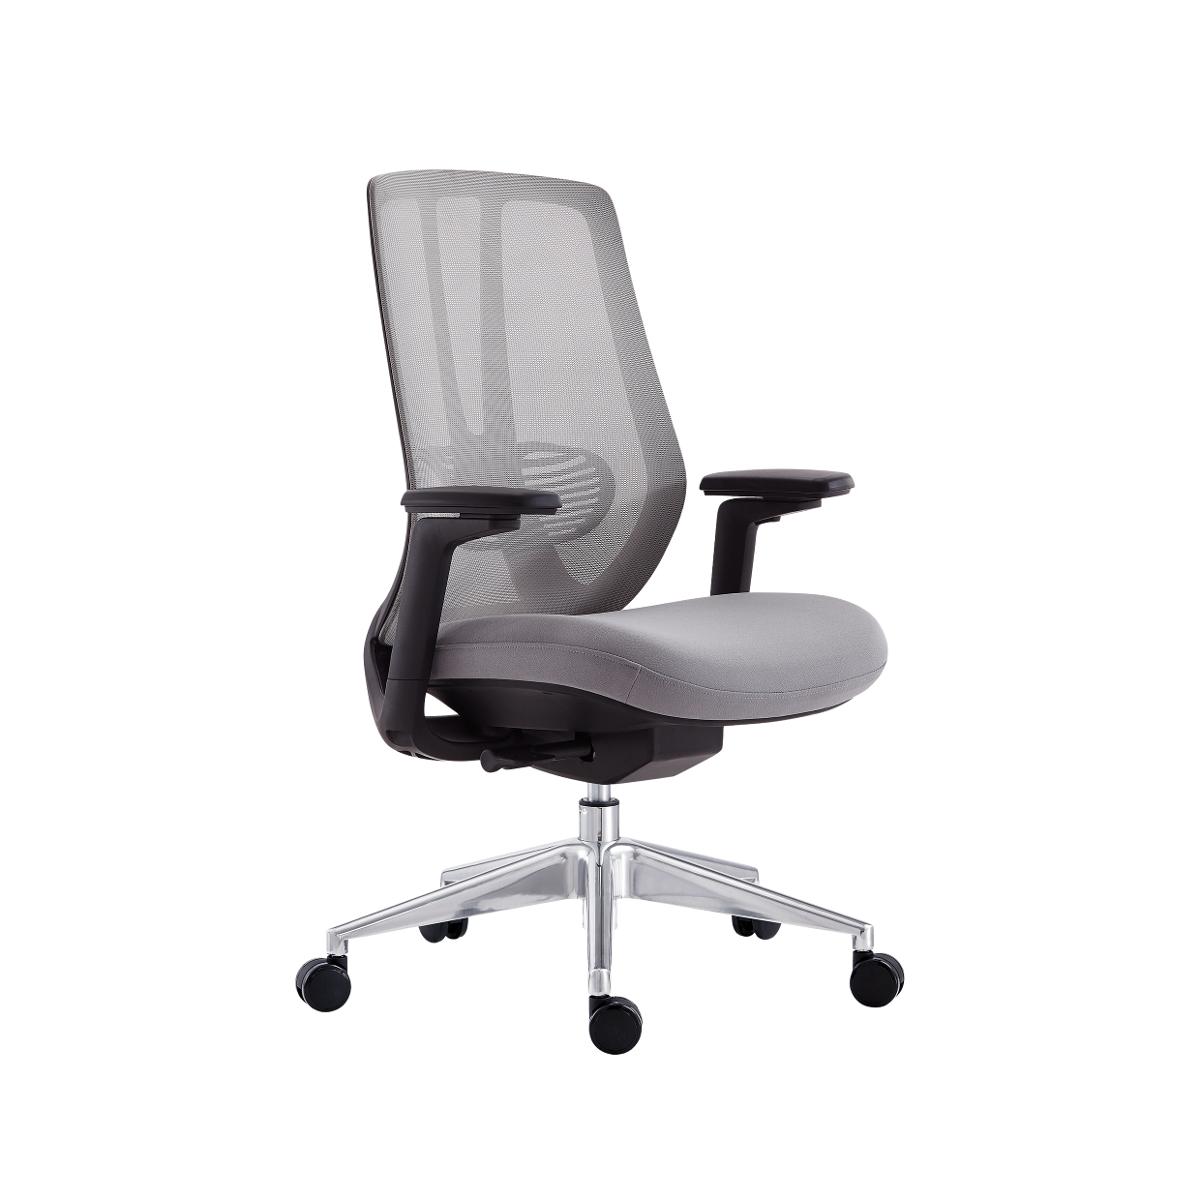 Super Chair เก้าอี้สำนักงาน รุ่น 7102-5 M Black